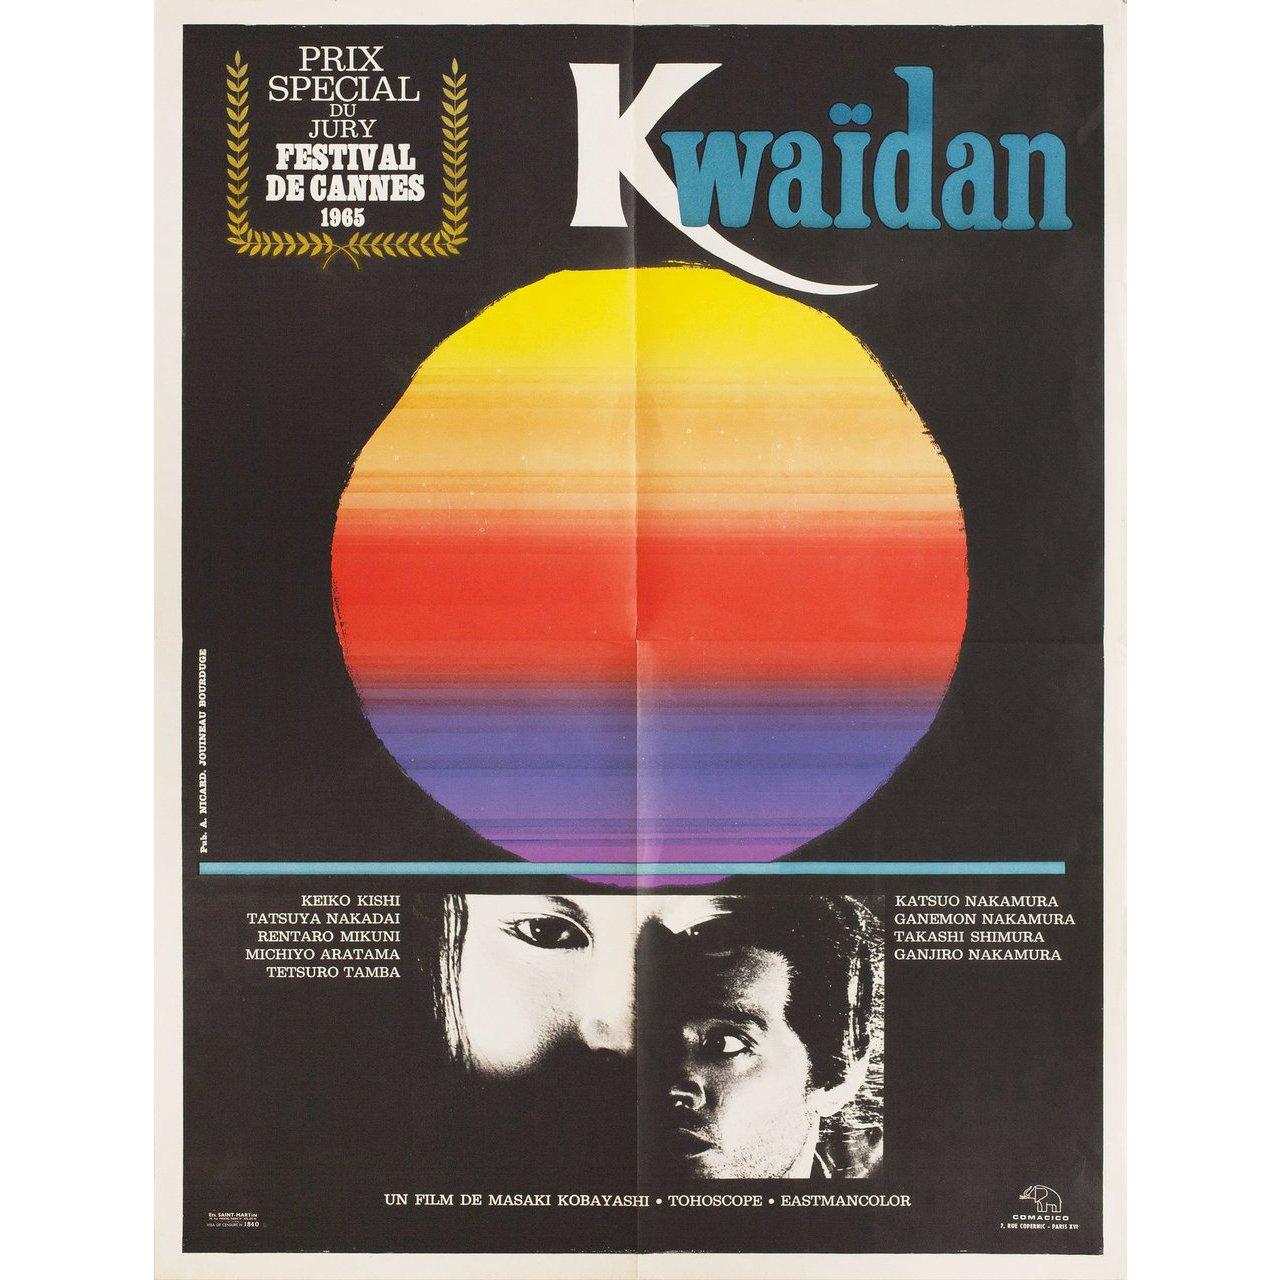 Originales französisches Moyenne-Plakat von 1965 für den Film Kwaidan unter der Regie von Masaki Kobayashi mit Michiyo Aratama / Misako Watanabe / Rentaro Mikuni / Kenjiro Ishiyama. Guter Zustand, gefaltet. Viele Originalplakate wurden gefaltet